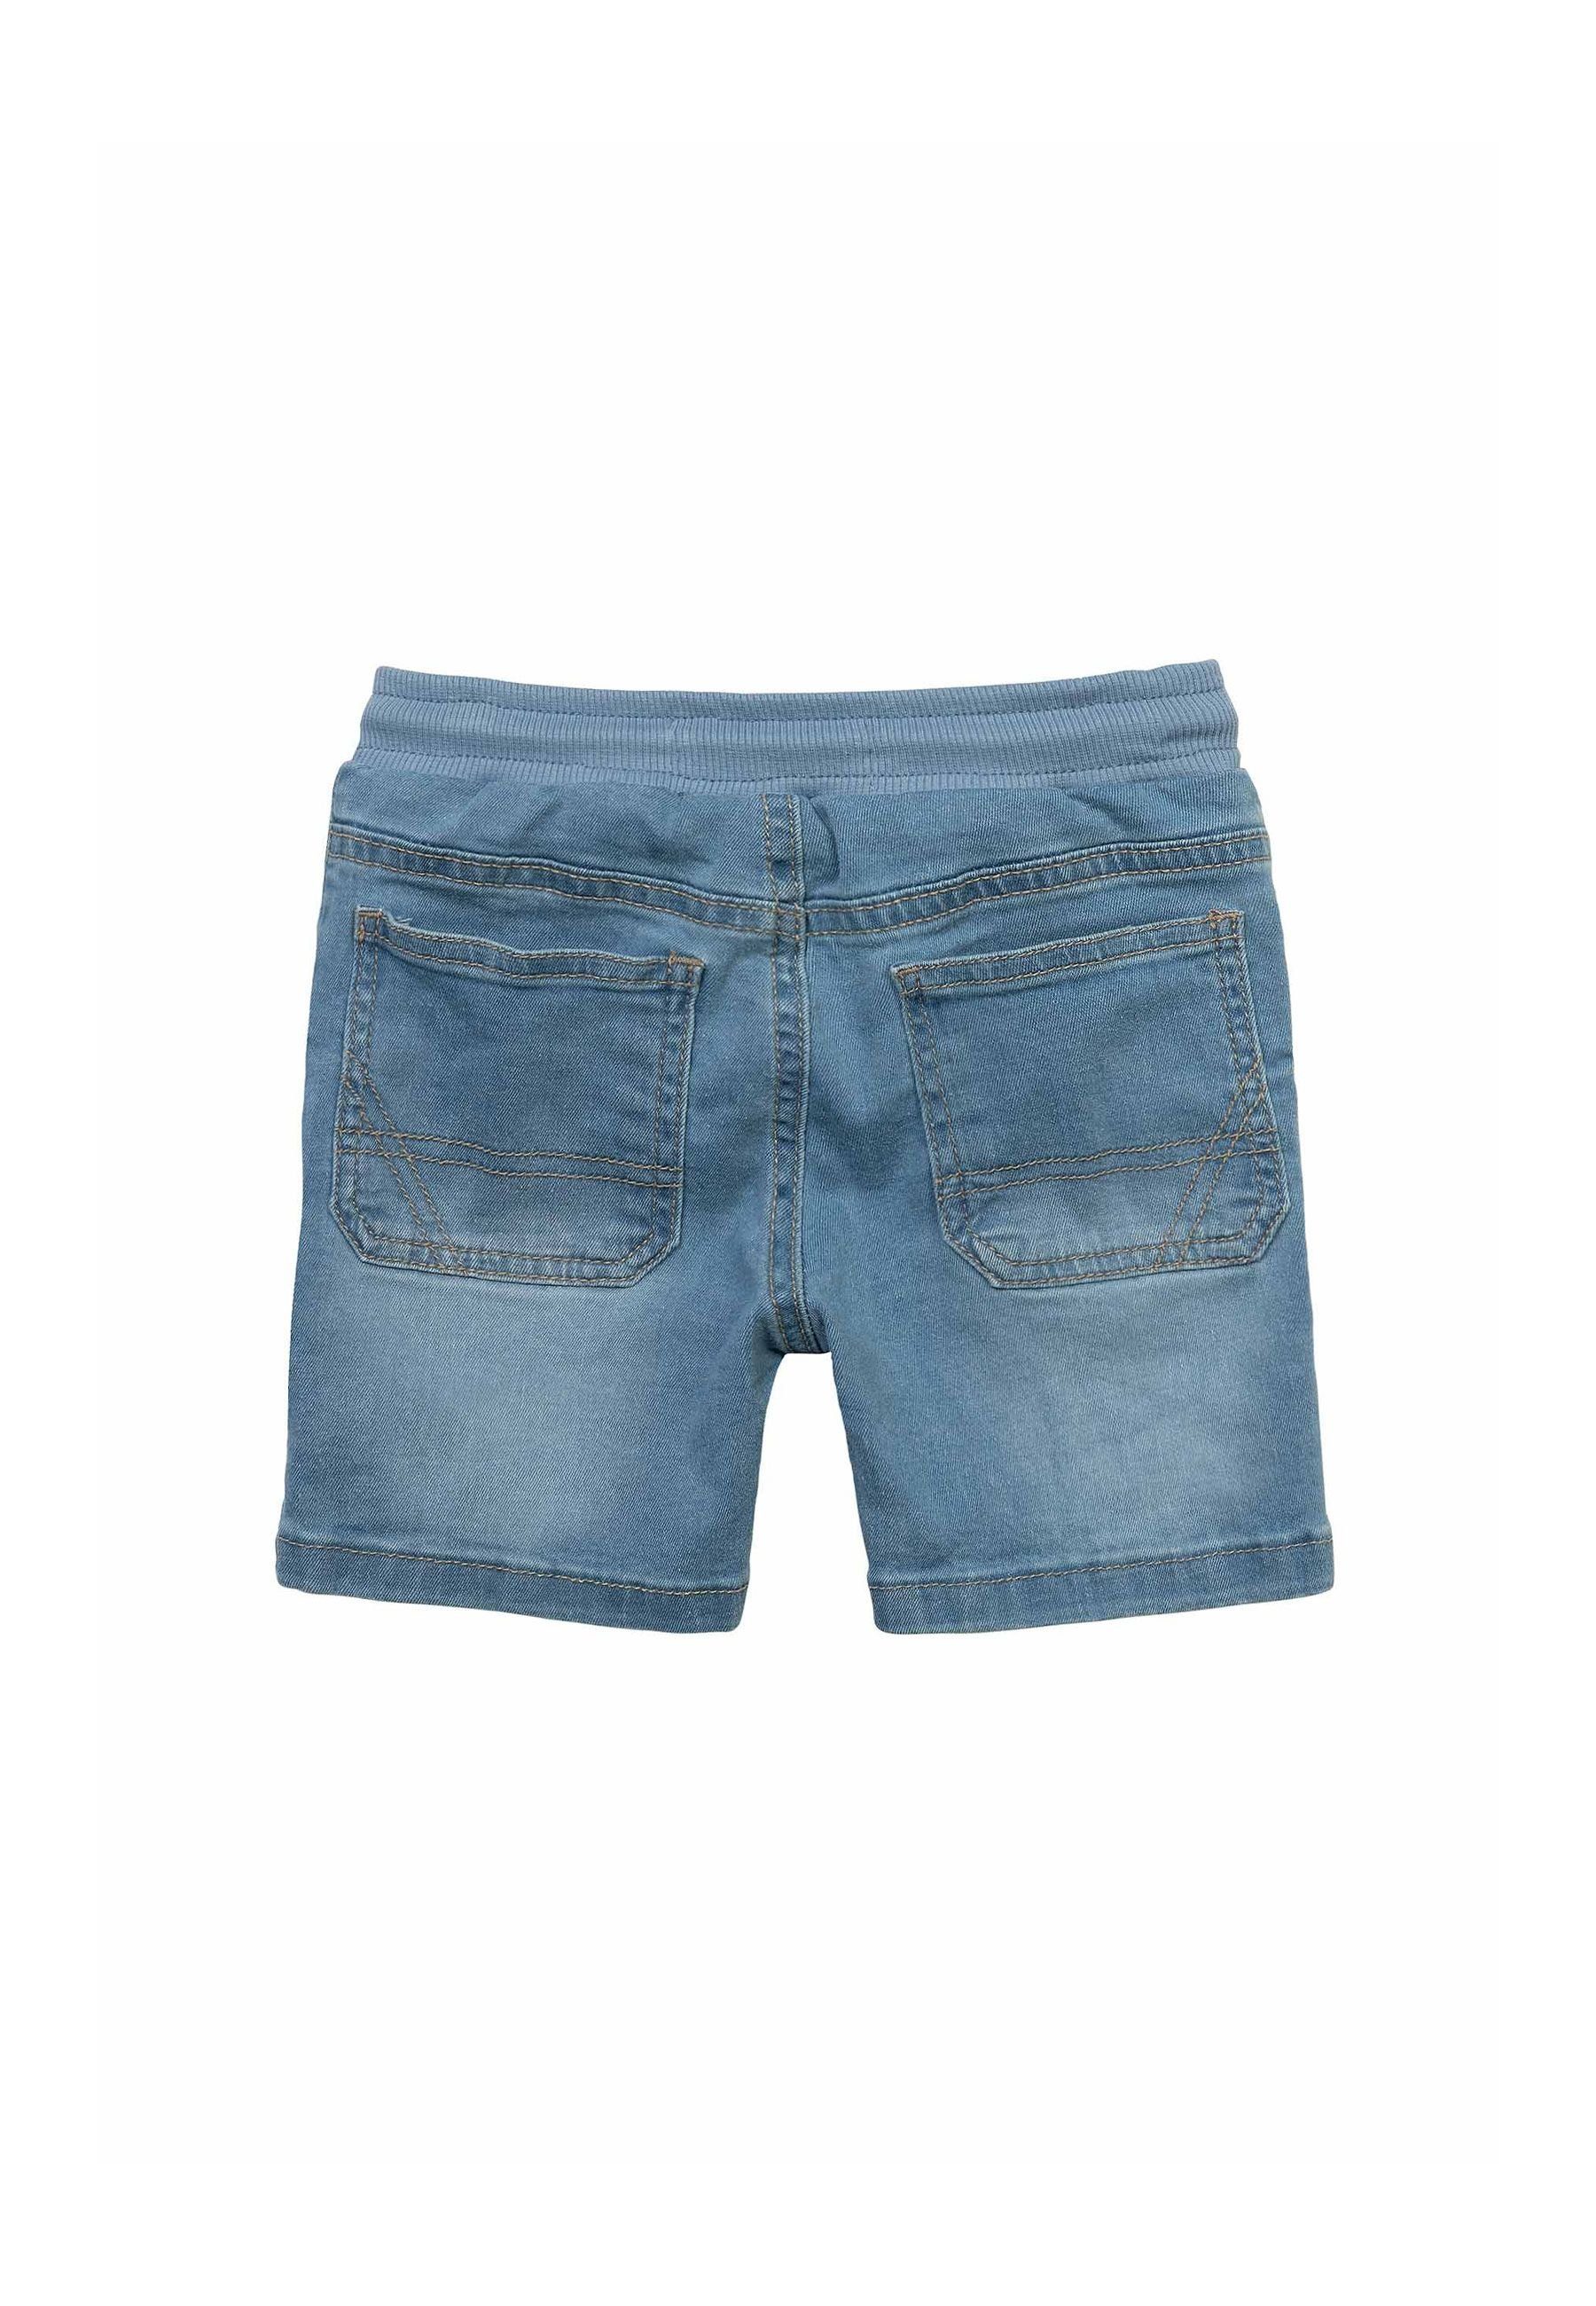 MINOTI Jeansshorts Shorts (1y-8y)